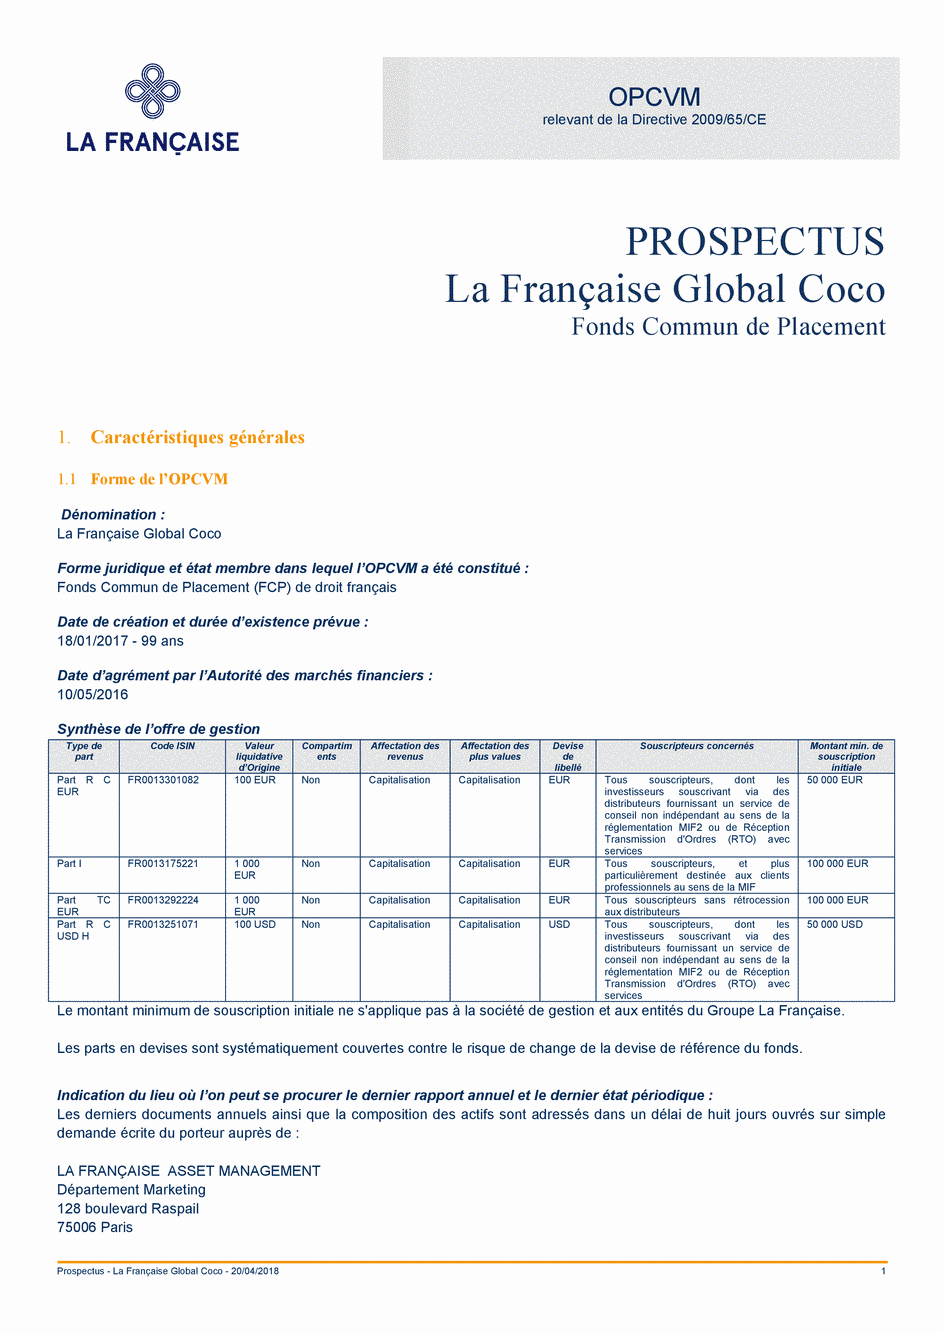 Prospectus La Française Global Coco - Part T C USD H - 20/04/2018 - Français